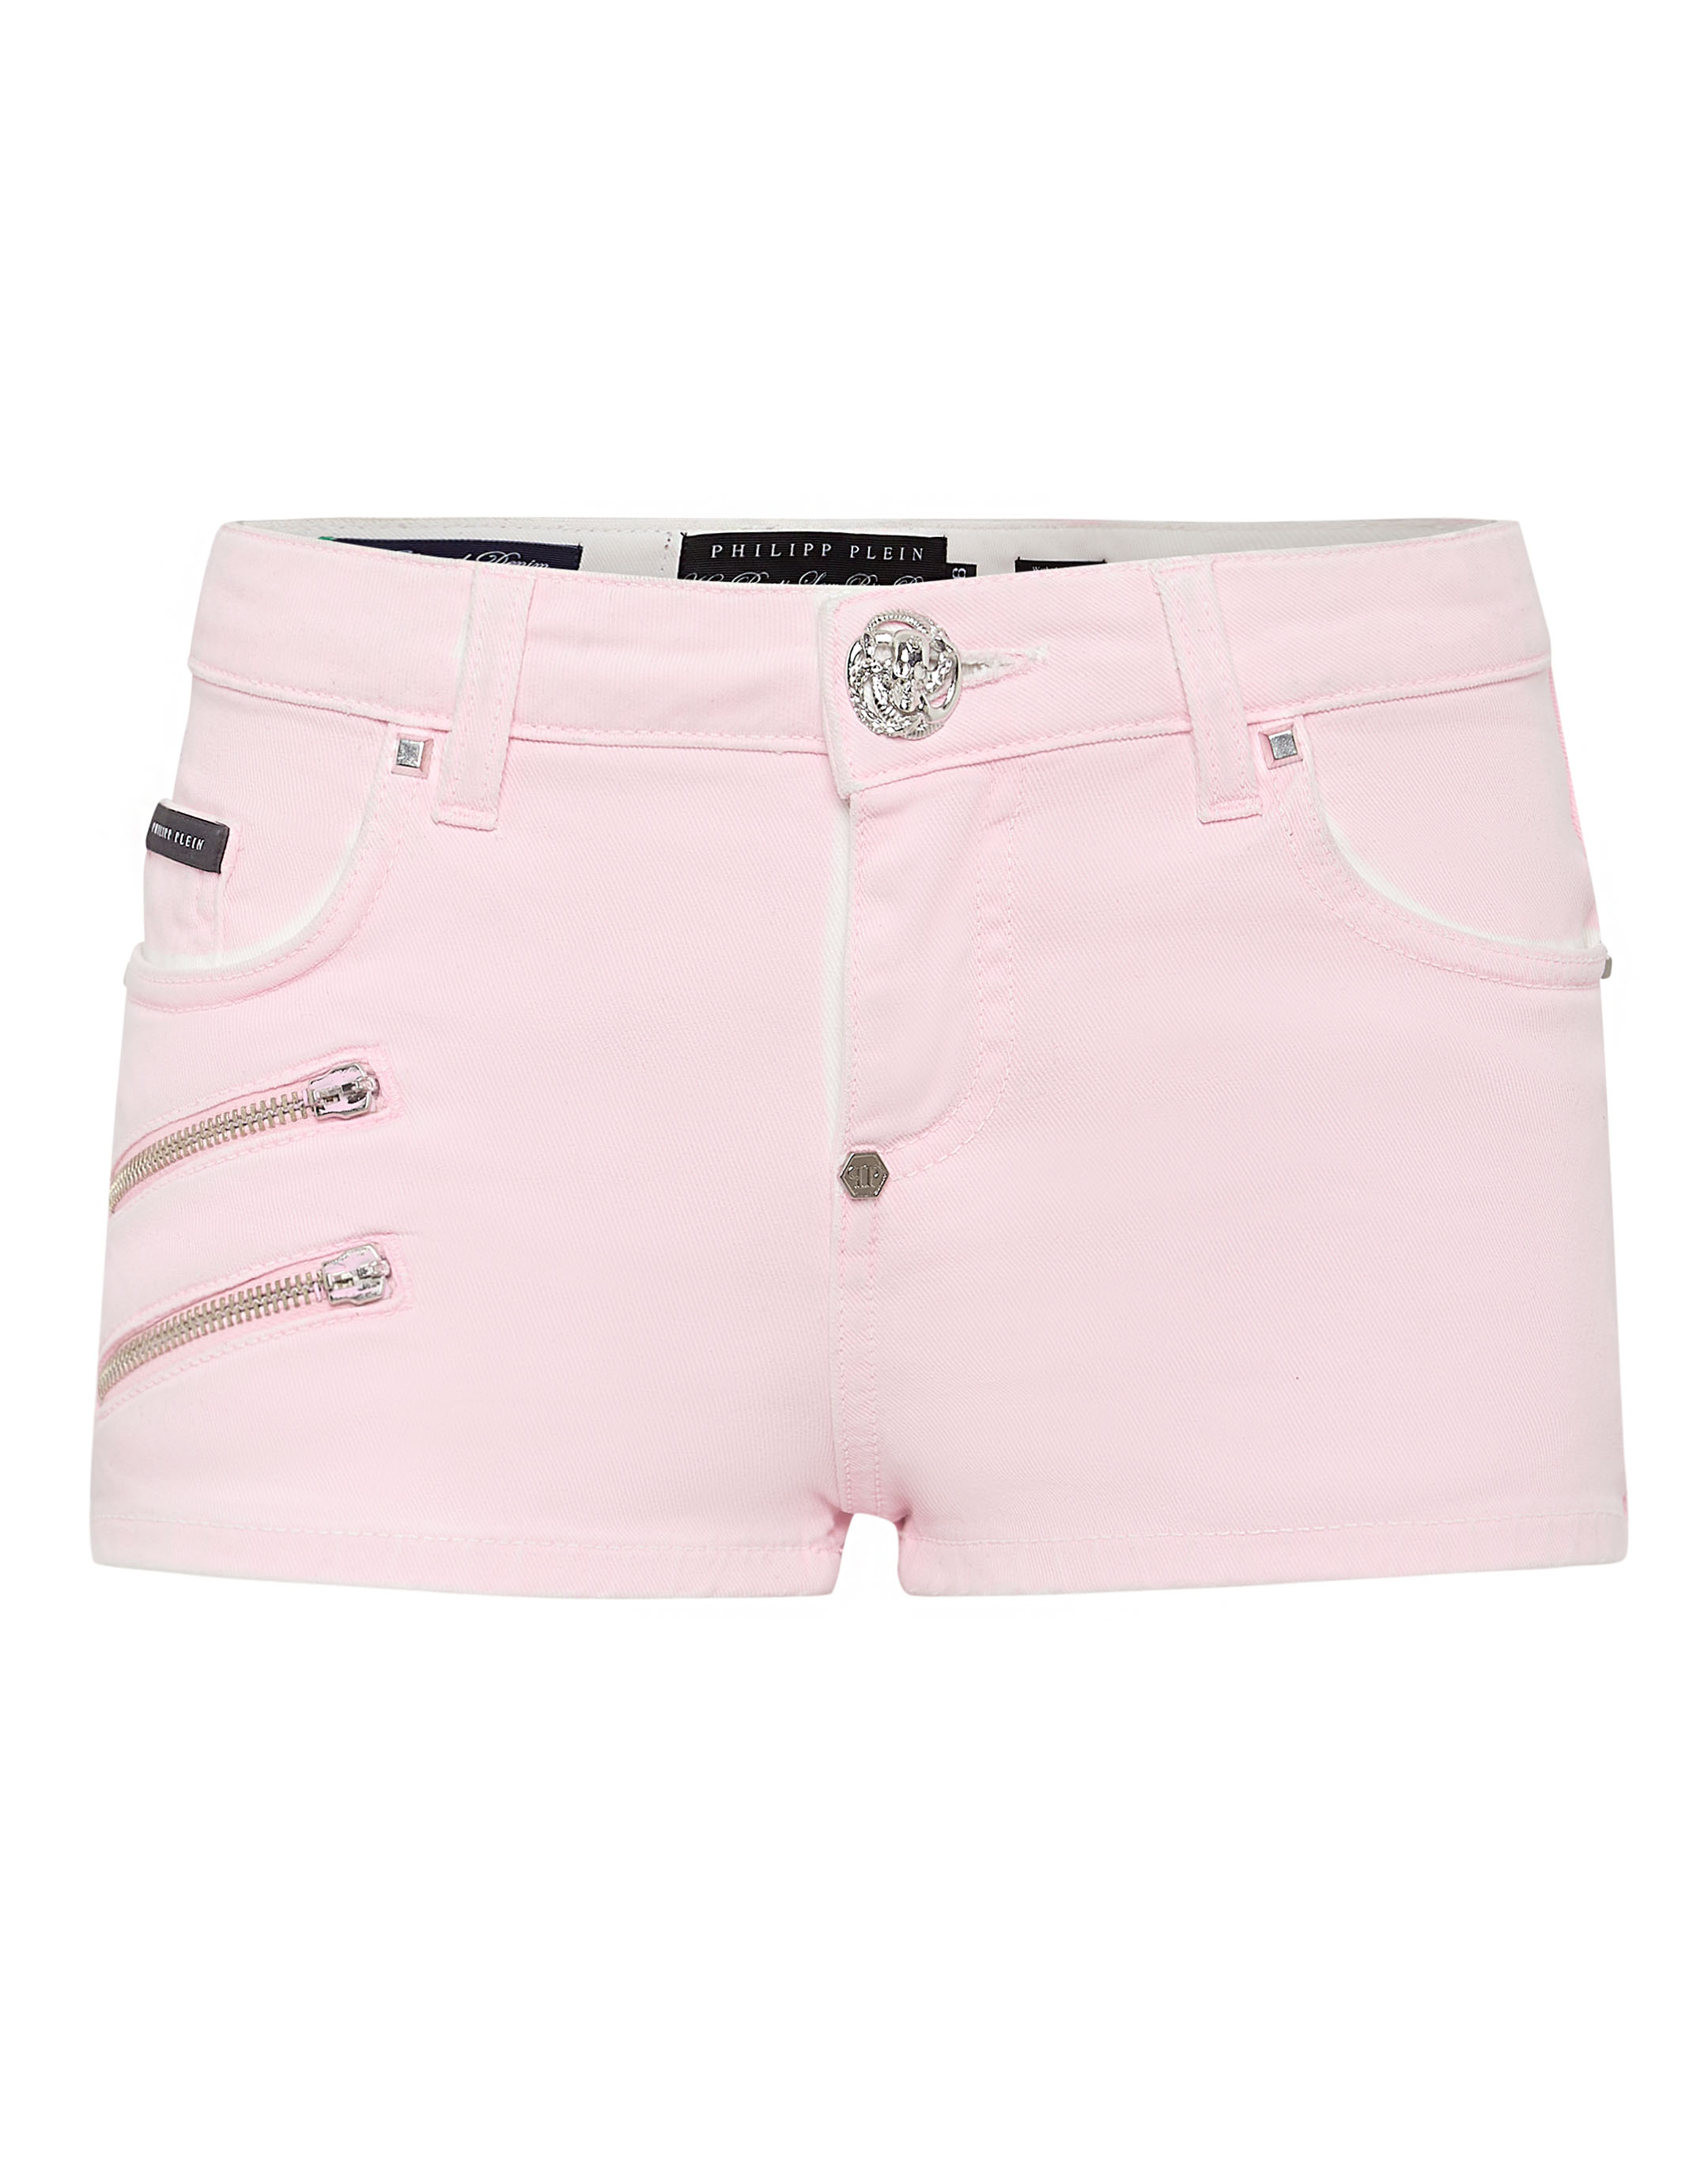 CASPAR Womens Jeans Shorts / Hot Pants with Decorative Zipper Applications  - HTP001 | Caspar Fashion